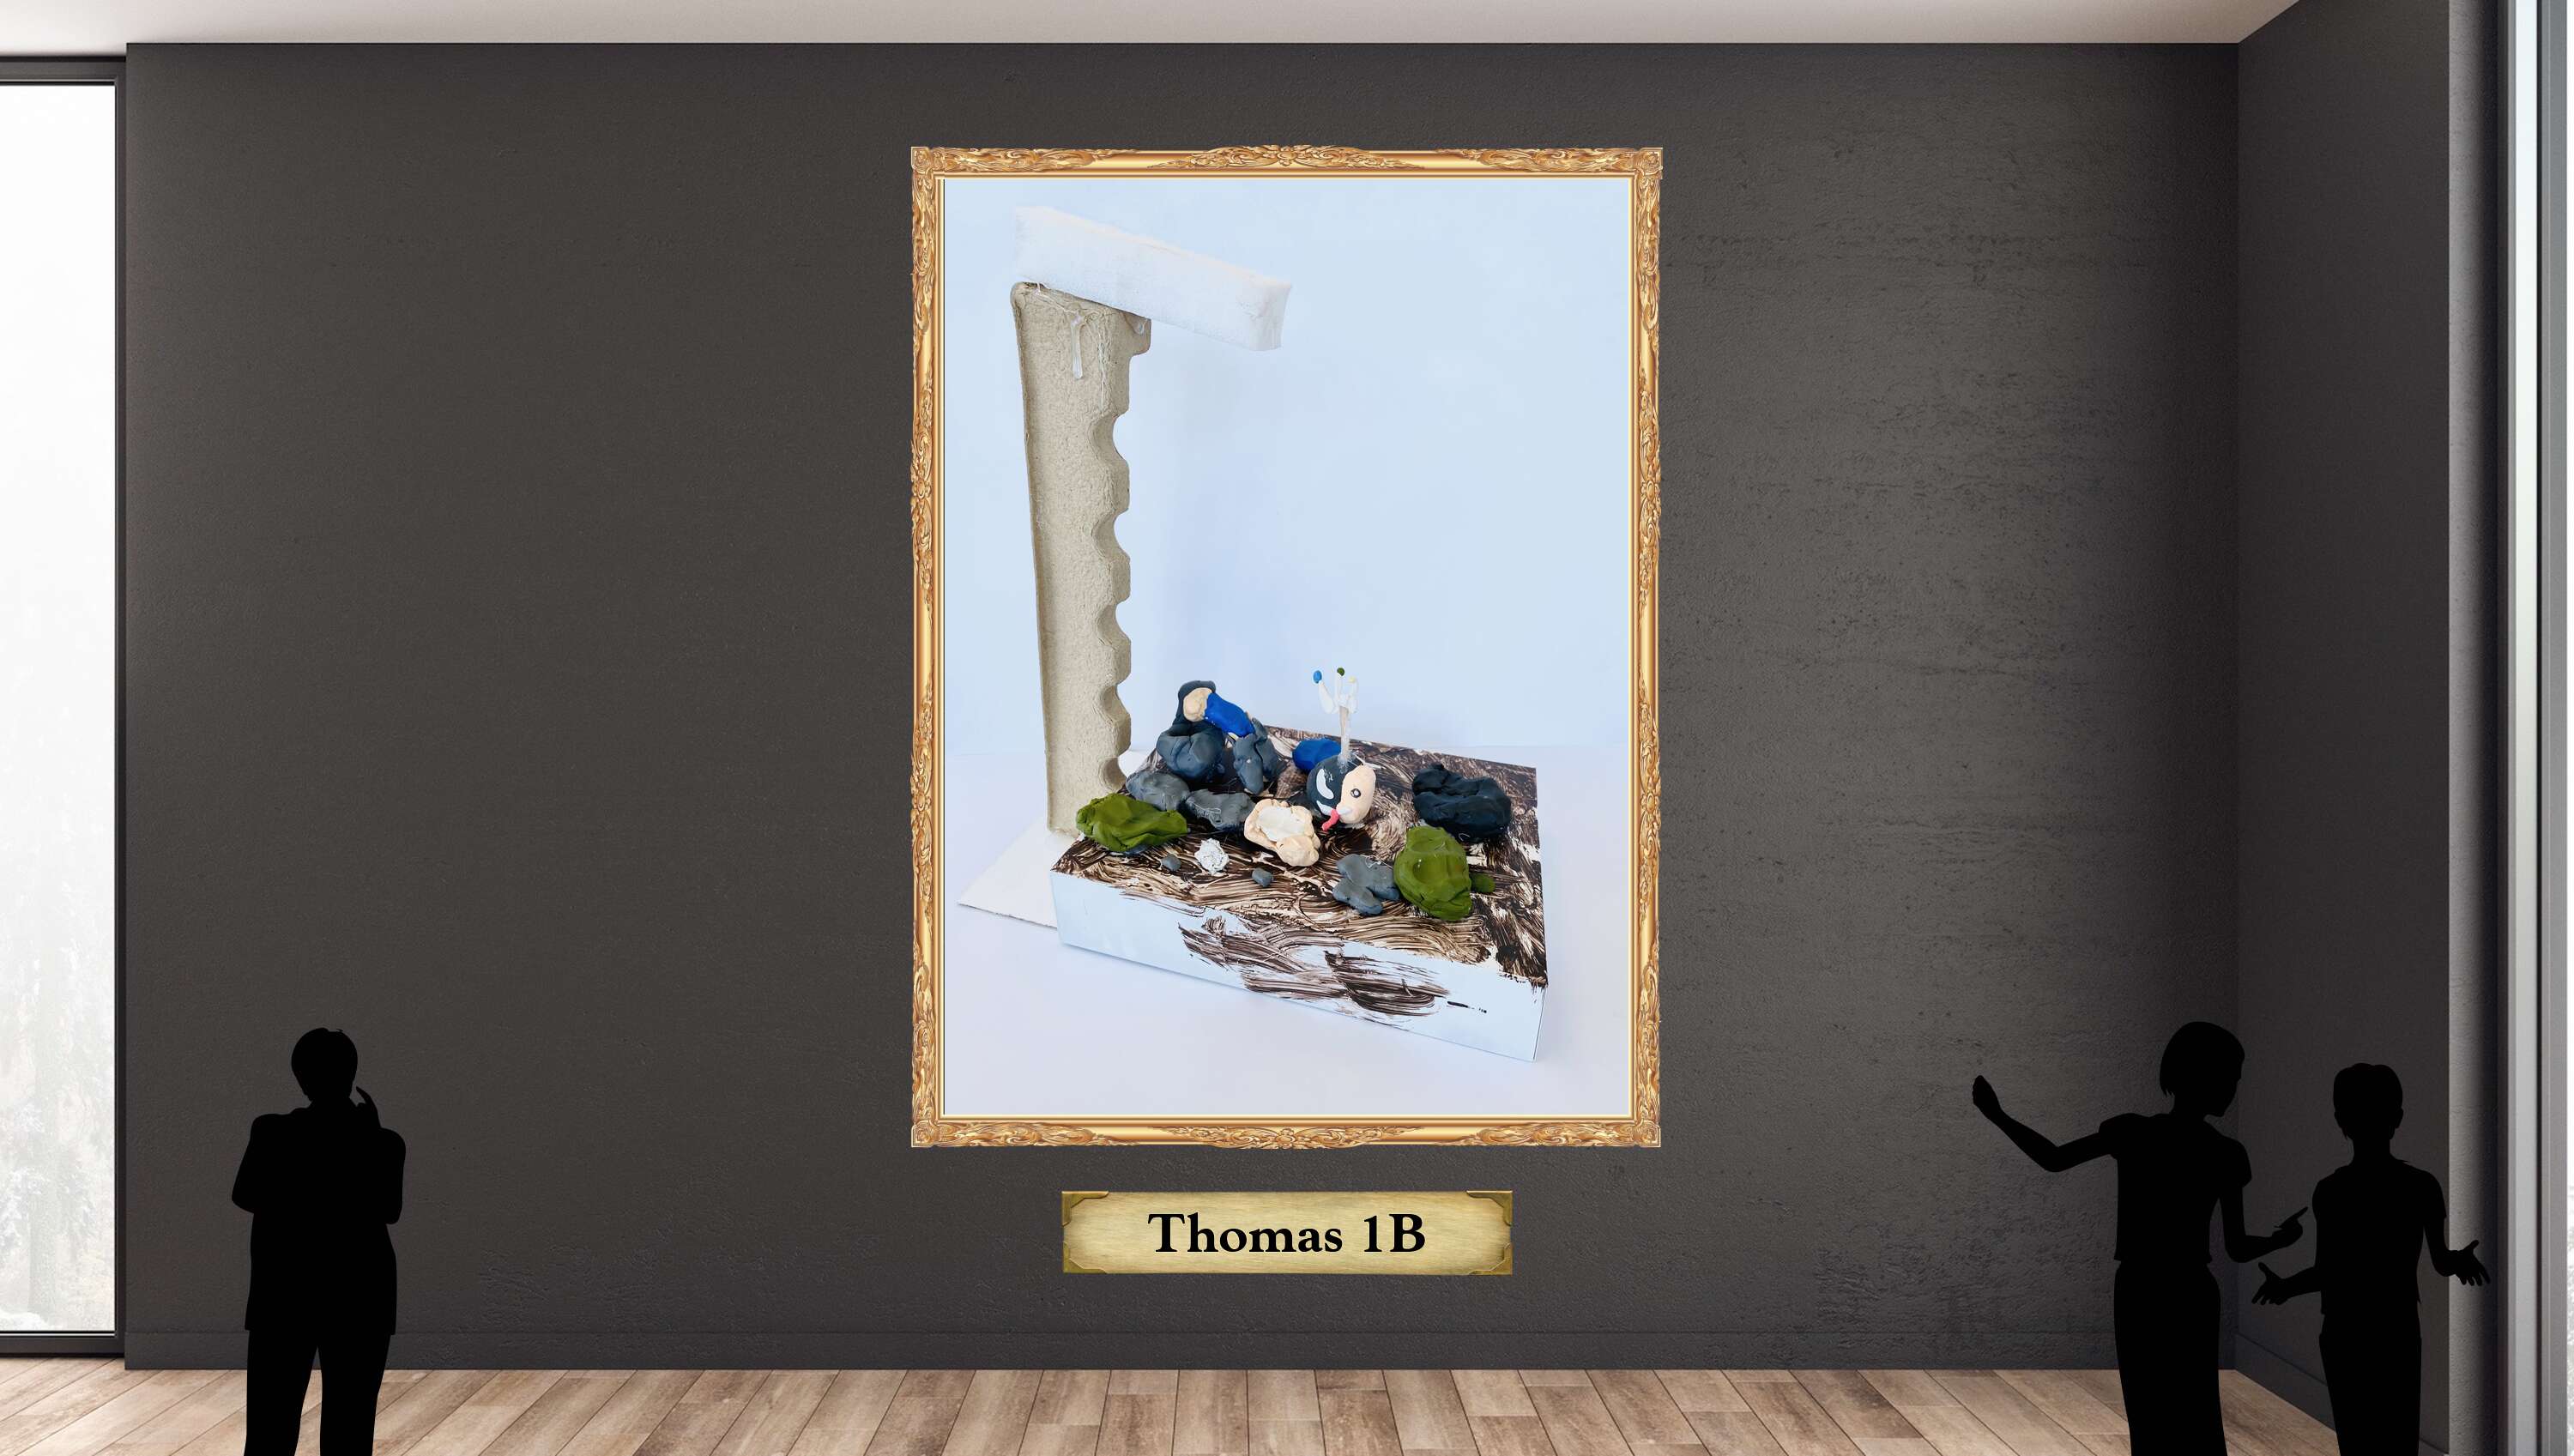 Thomas 1B